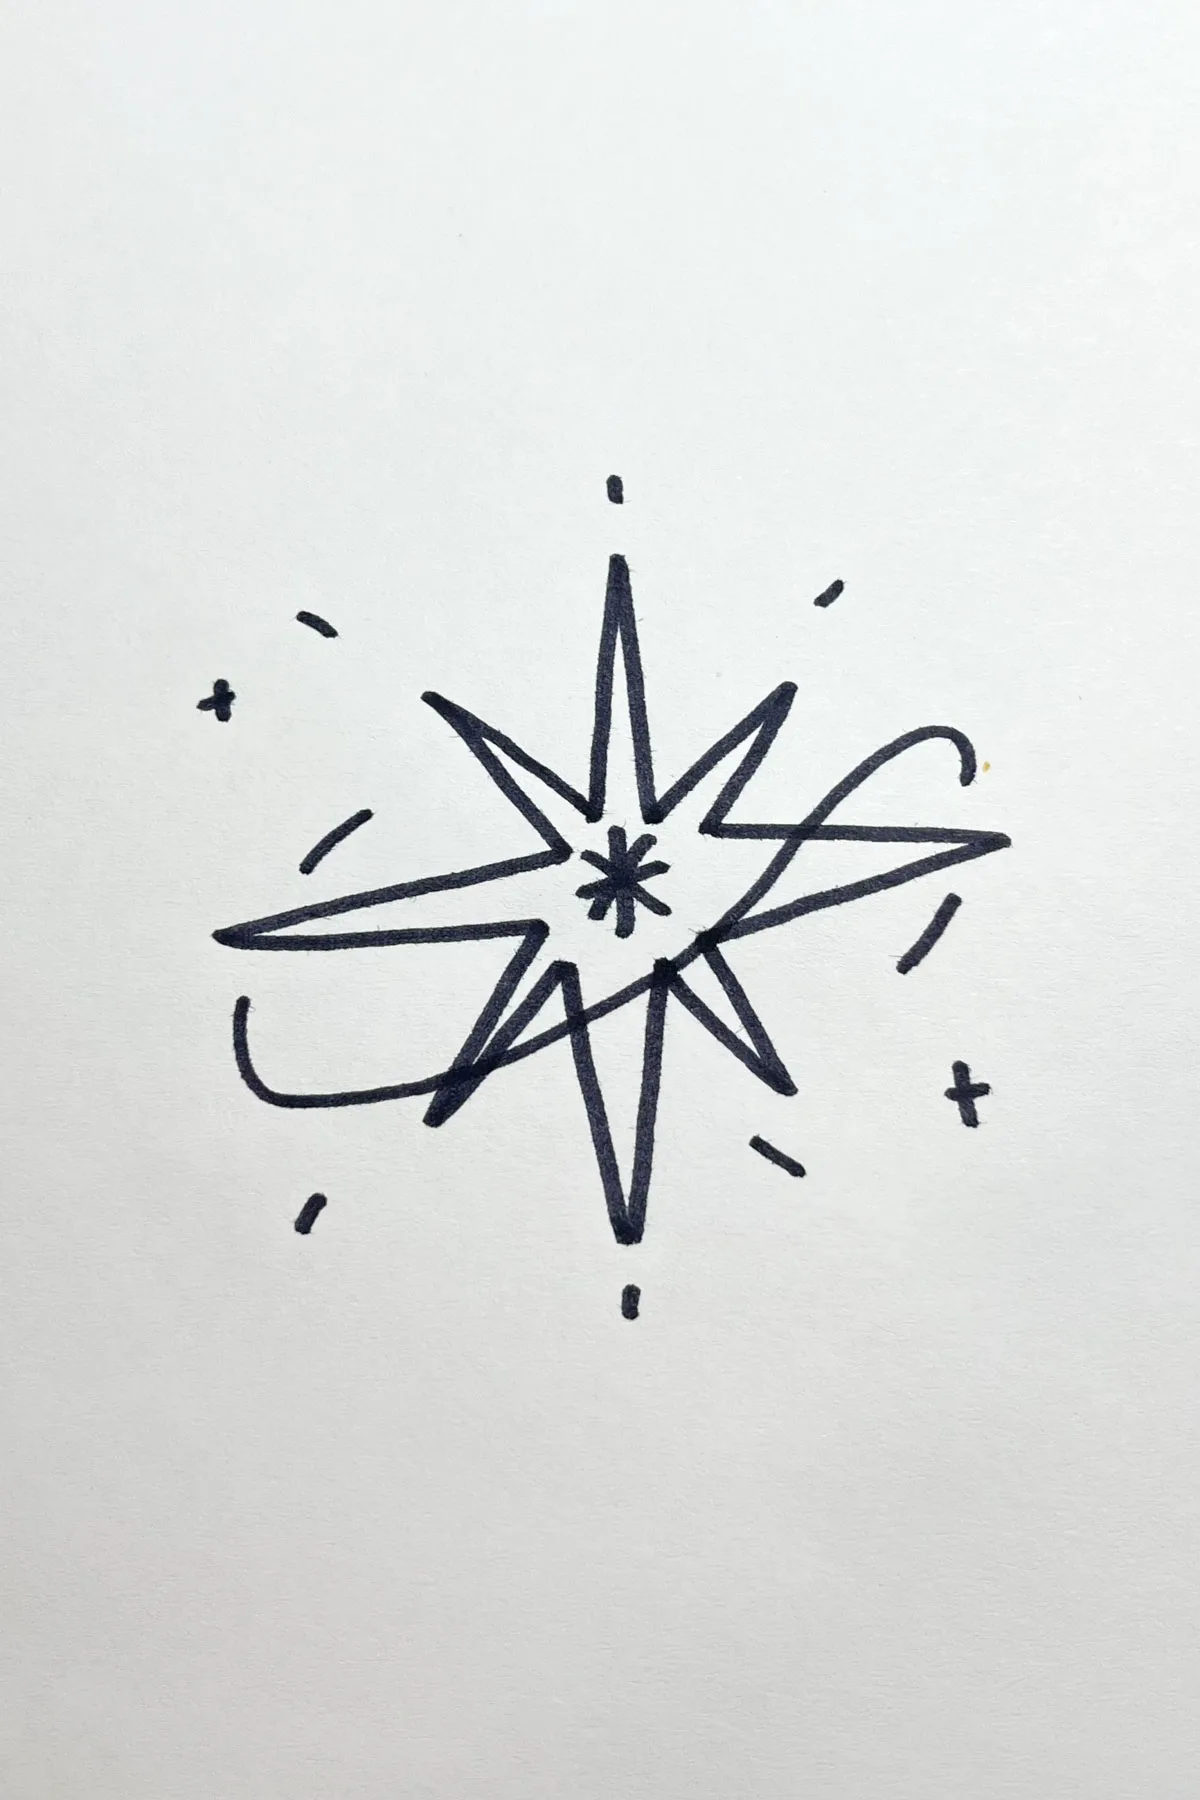 starburst drawing